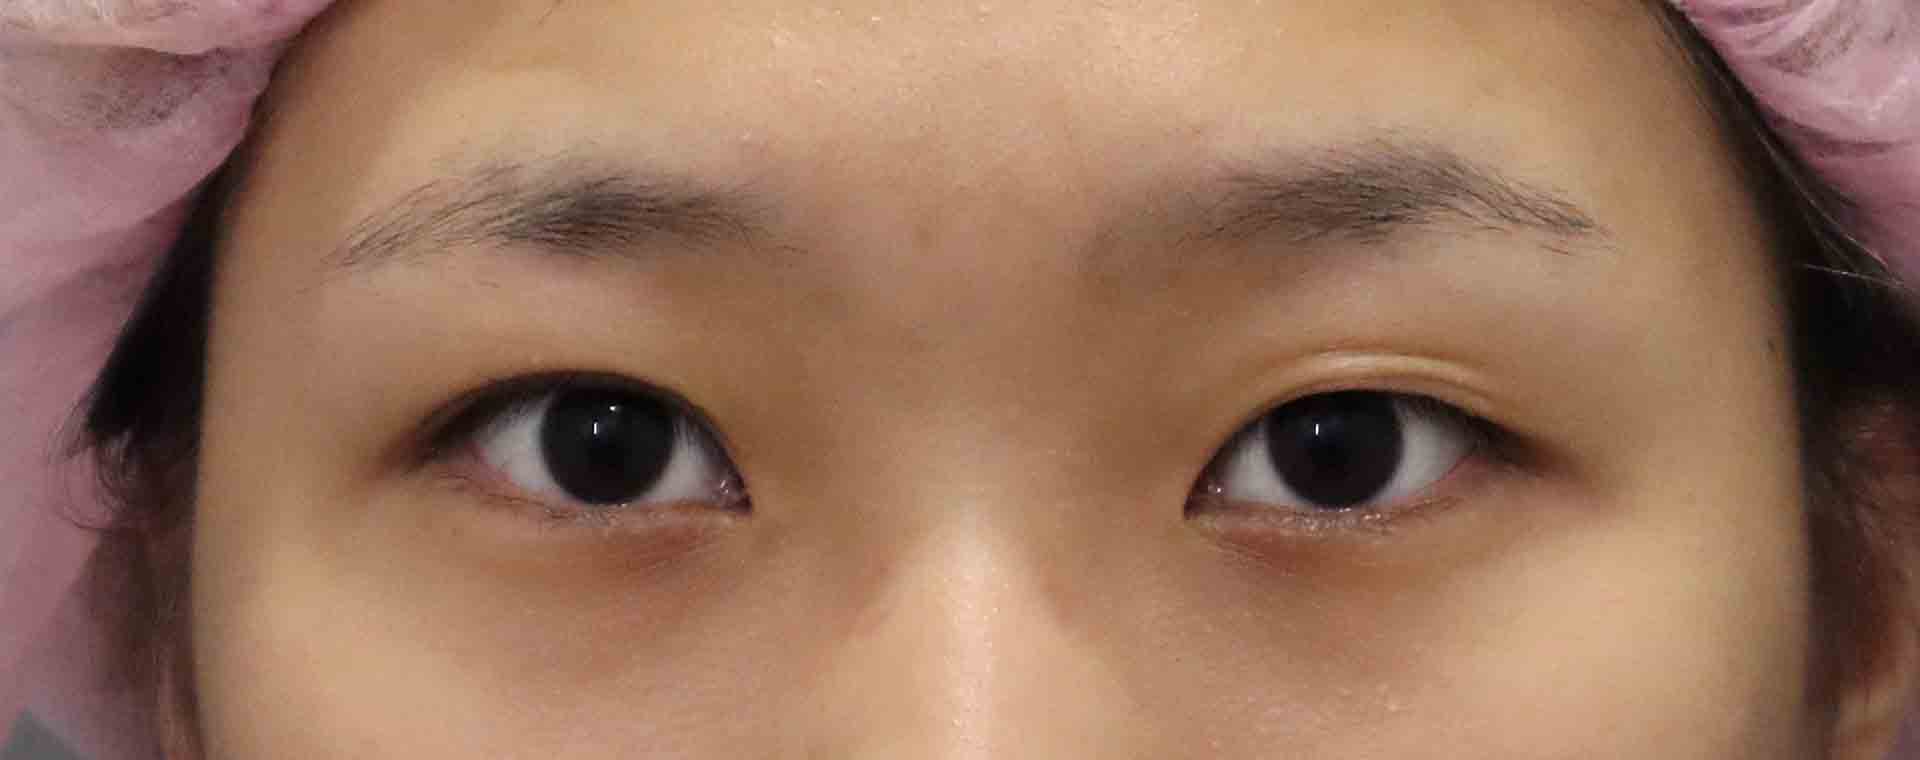 雙眼皮手術-雙眼皮手術推薦醫師-縫雙眼皮後遺症-割雙眼皮恢復期-割雙眼皮價錢